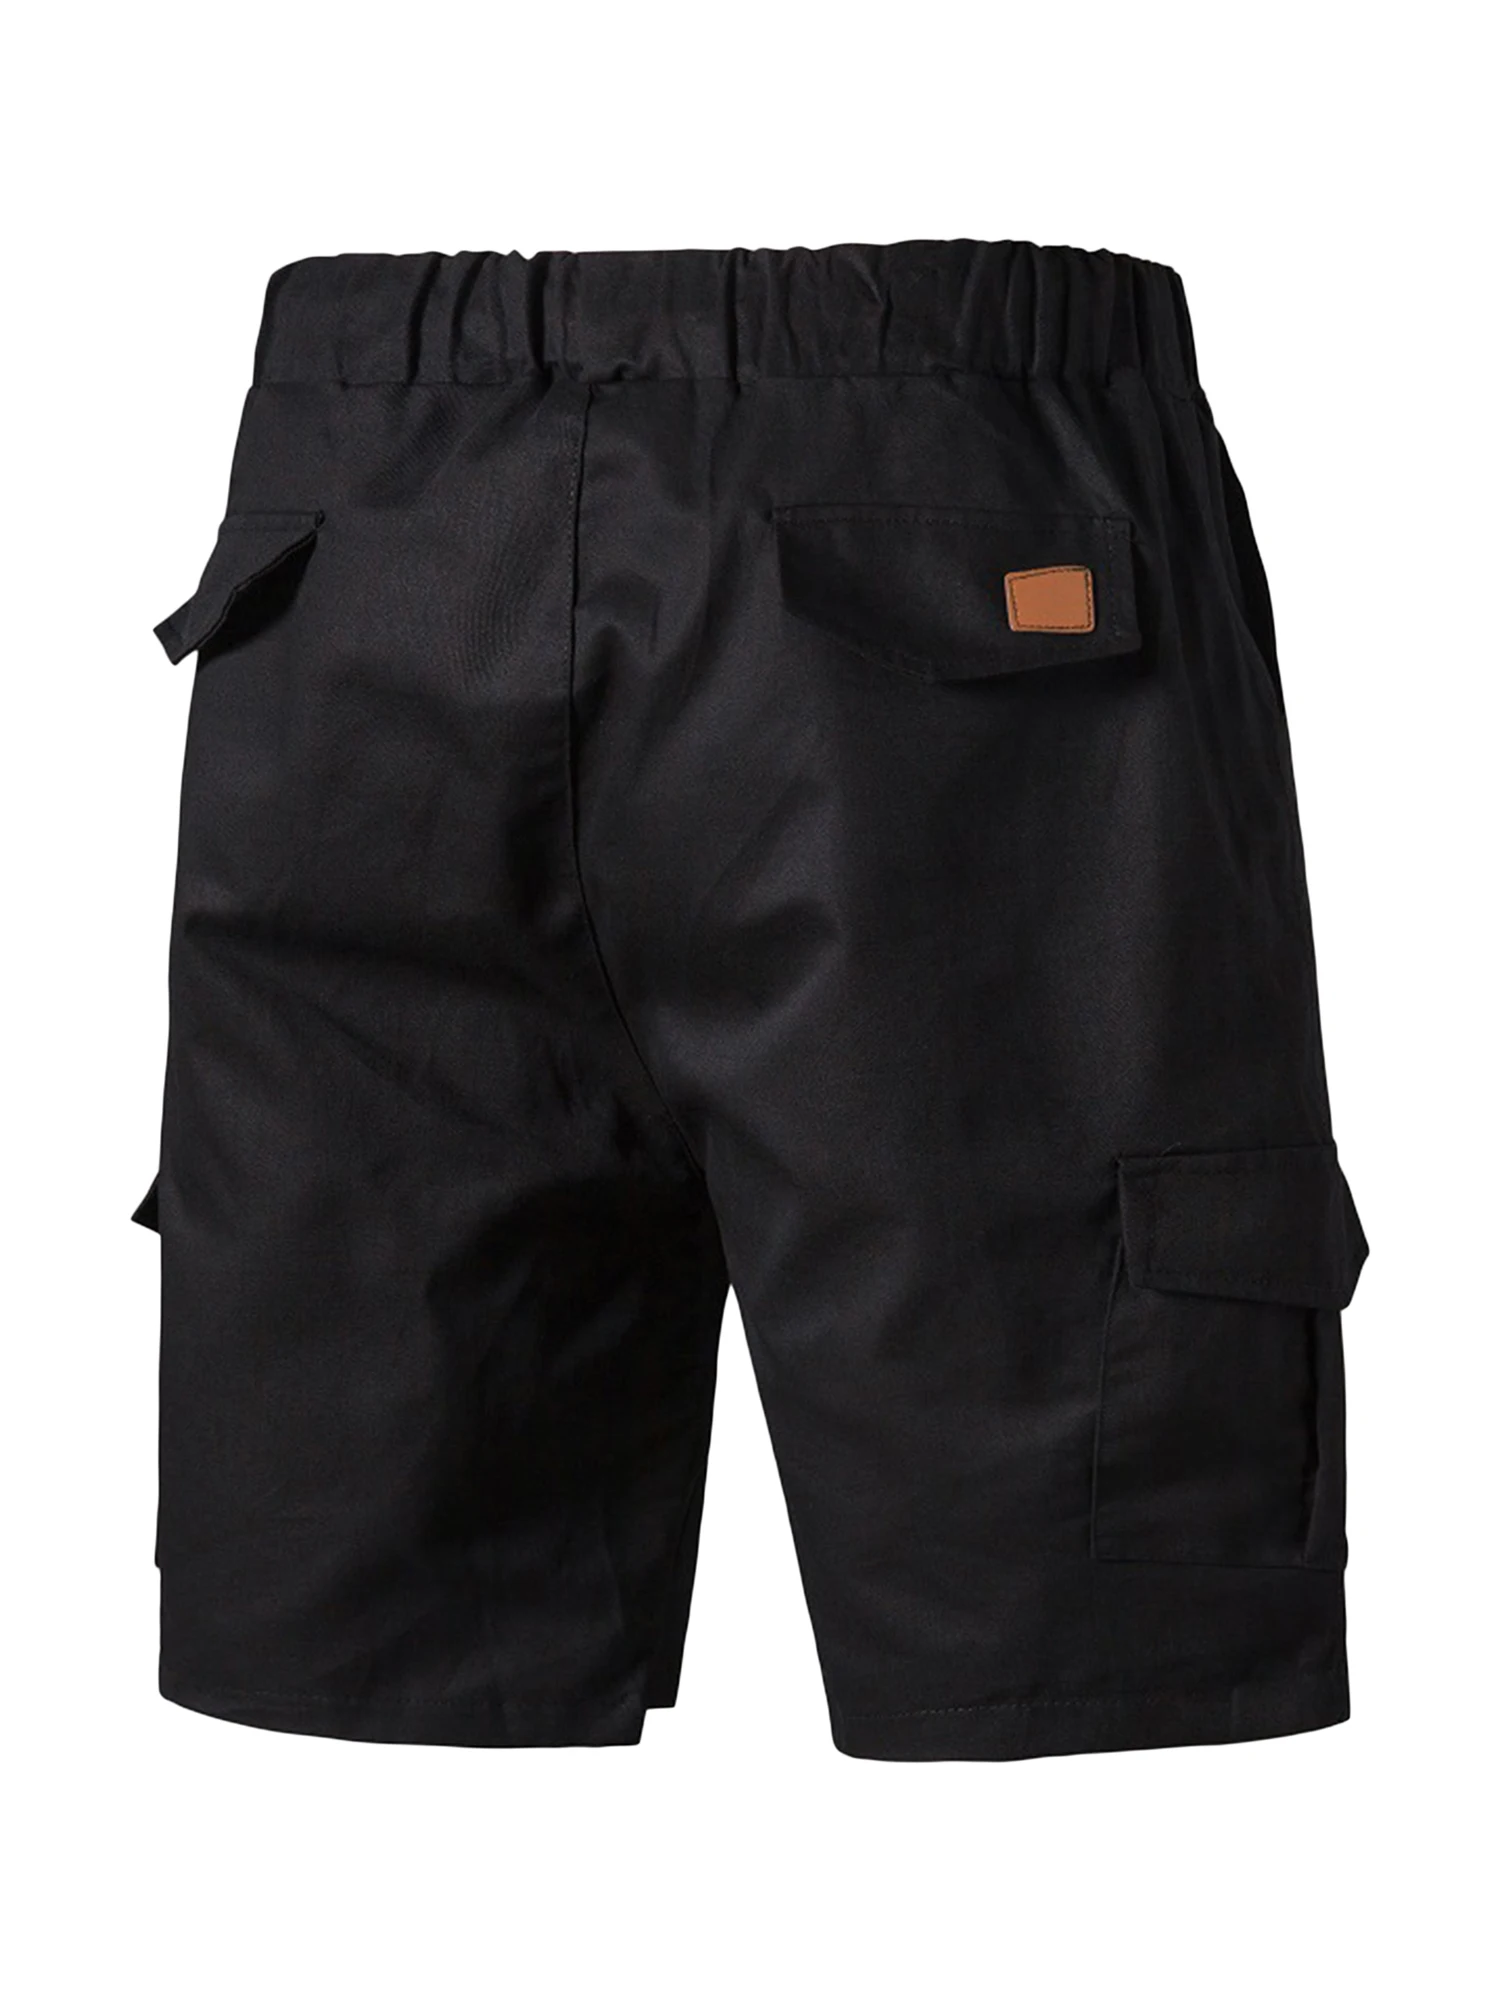 

Herren Sommer Cargo Kurzehosen Männlich Cargo Shorts Mode Männer Elastische Taille Kordelzug Solid Shorts Streetwear mit